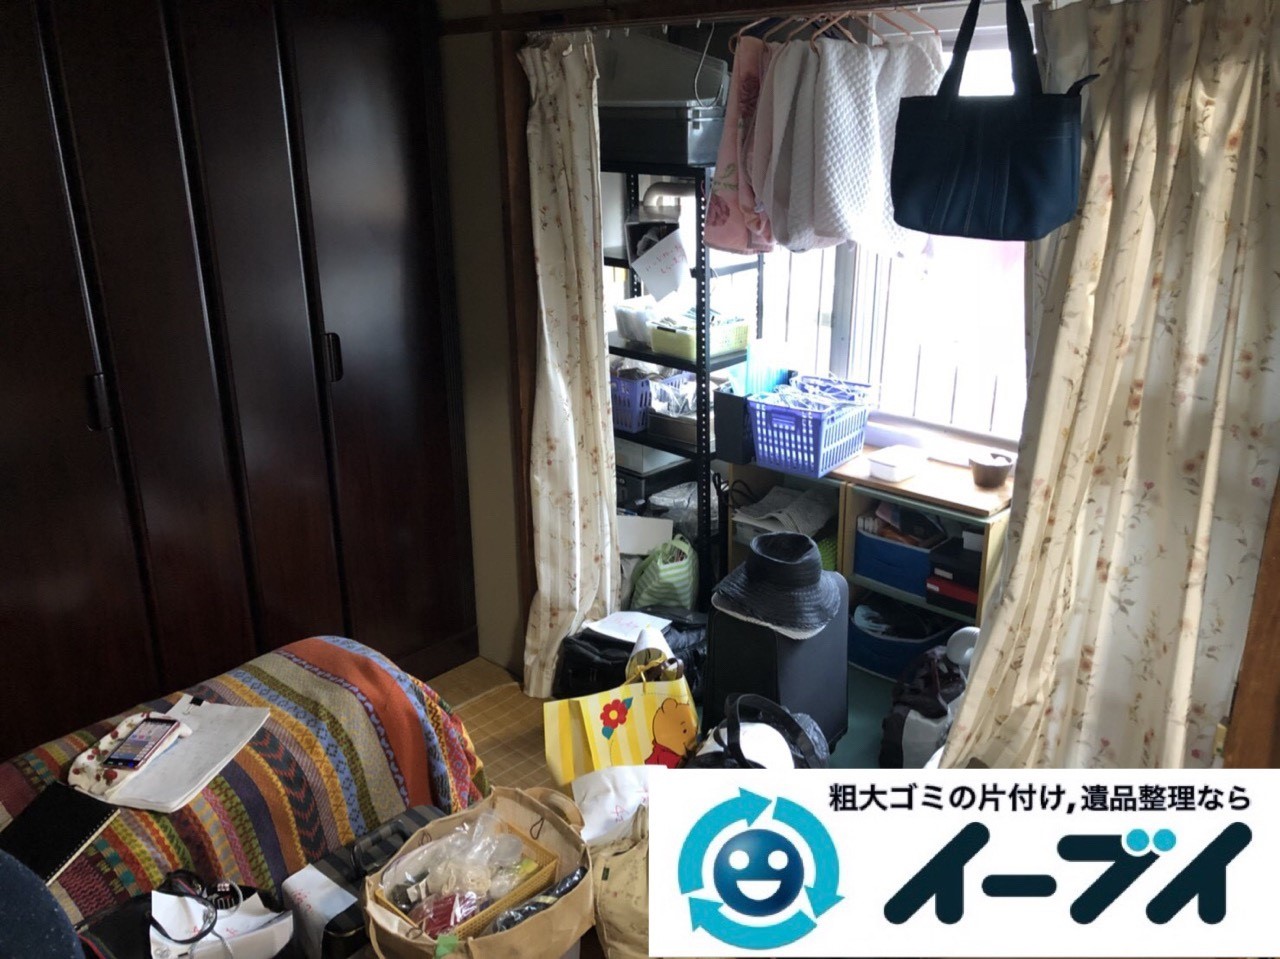 2019年１月２７日大阪府大阪市東淀川区で婚礼家具から細かな生活用品まで全て不用品回収させていただきました。写真3